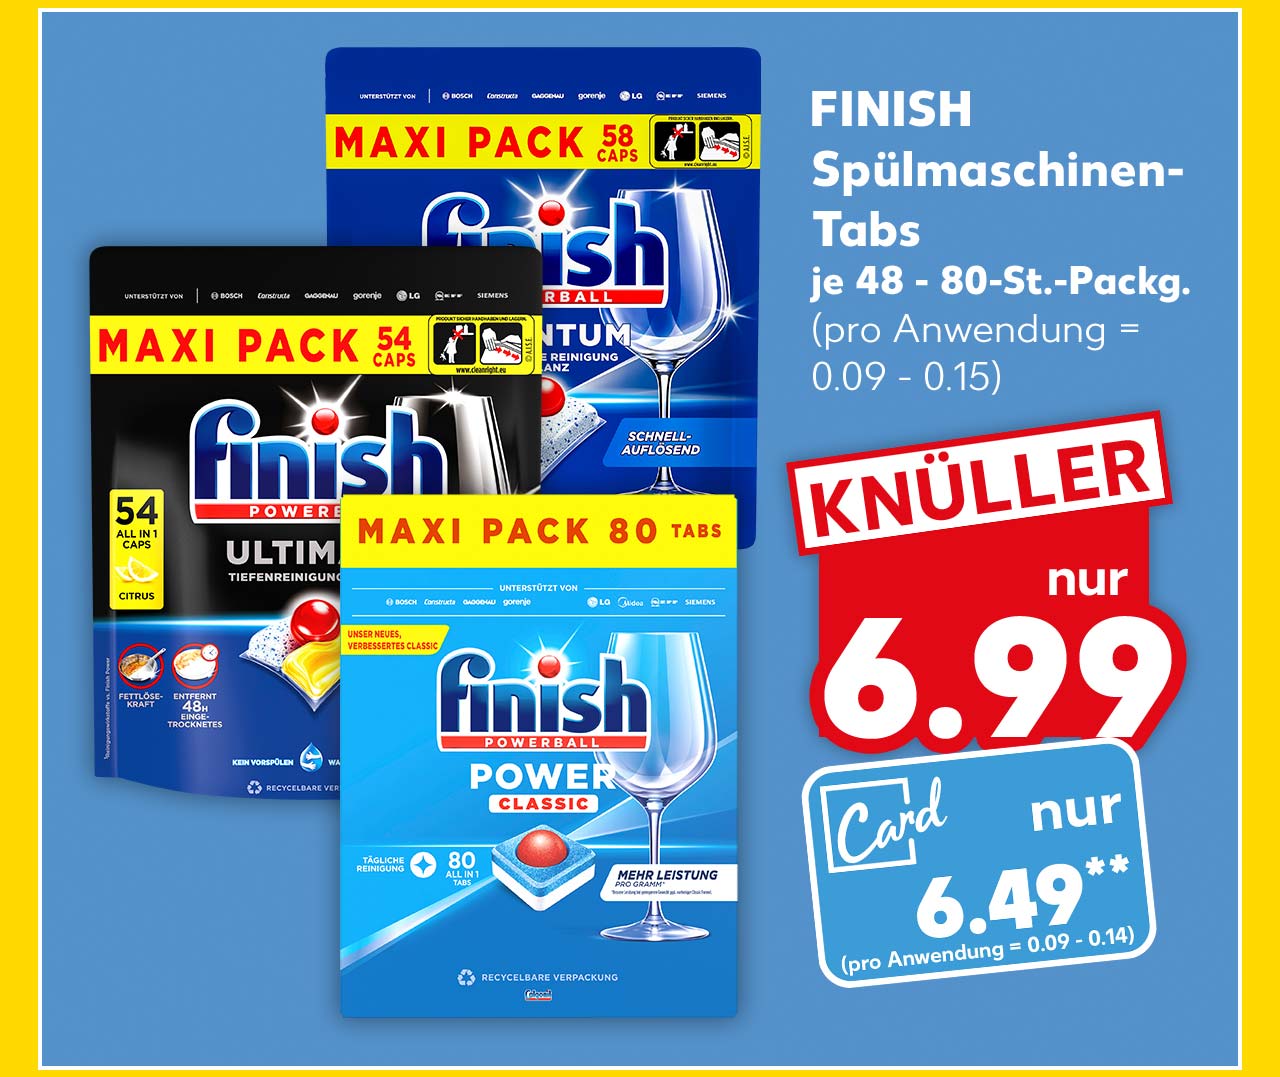 Finish Spülmaschinen-Tabs, versch. Sorten, je 48 - 80-St.-Packg. für 6.99 Euro (pro Anwendung = 0.09 - 0.15); Kaufland Card Preis: 6.49 Euro** (pro Anwendung = 0.09 - 0.14)